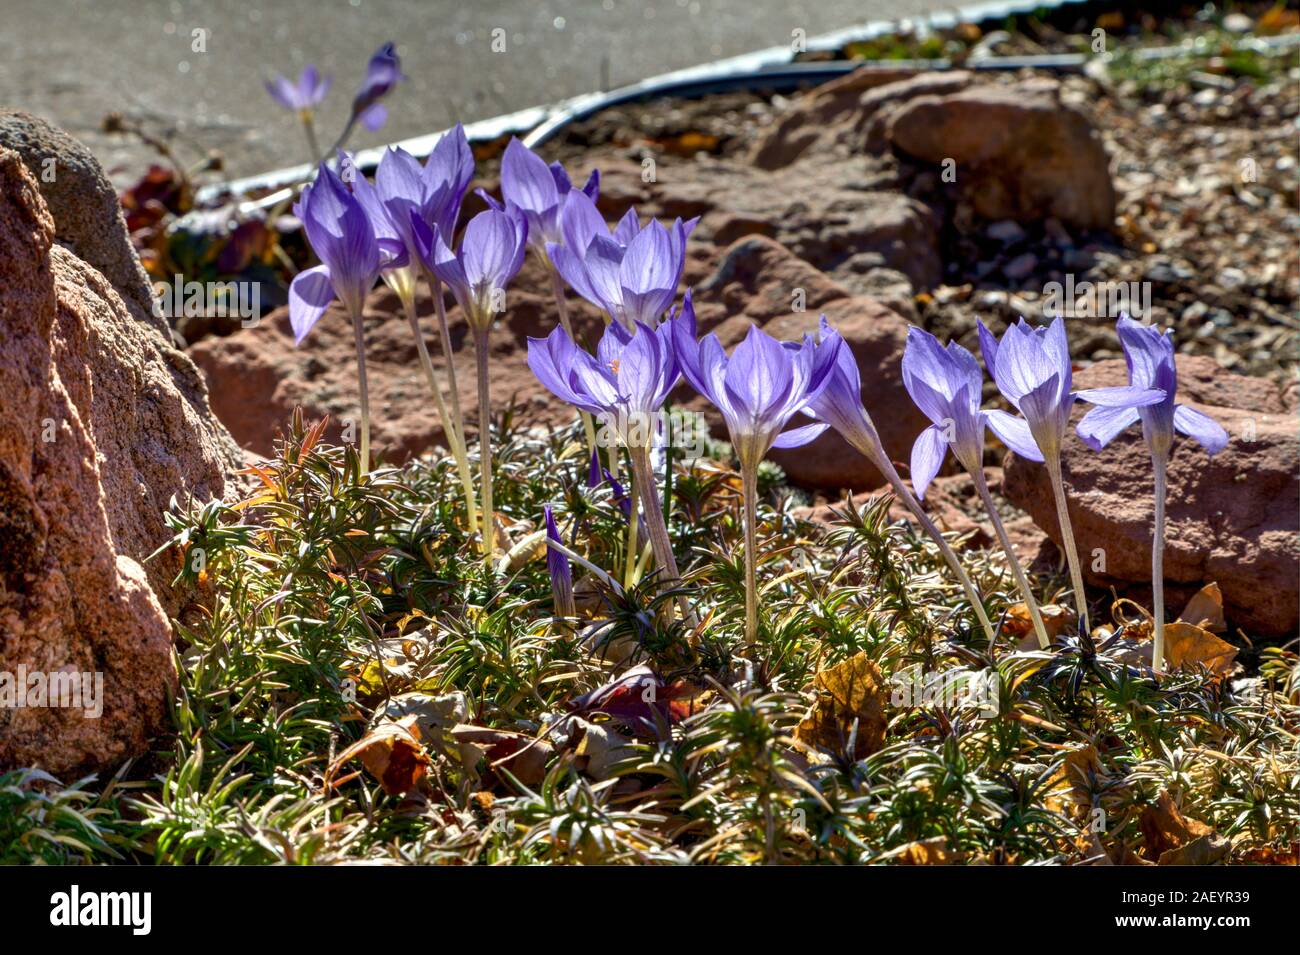 Bieberstein caduta della fioritura Crocus sono in piena fioritura sul loro tipico steli alti e retro illuminato dal sole di mezzogiorno. Foto Stock